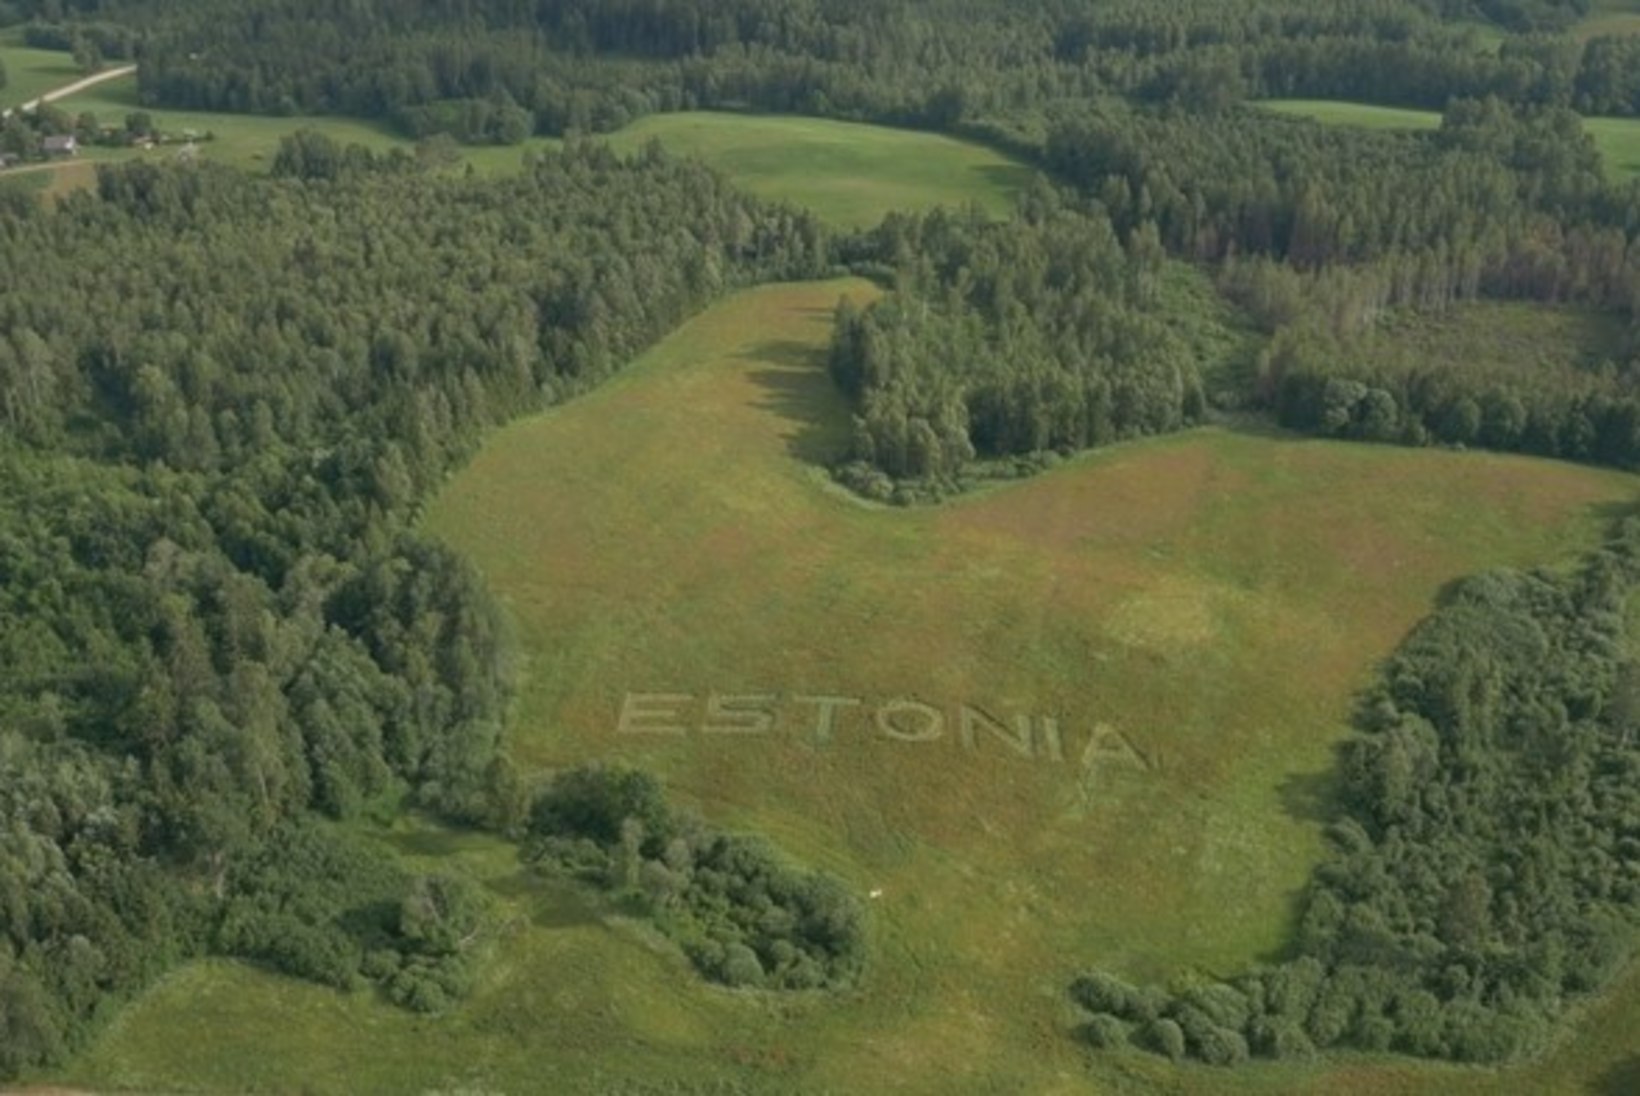 FOTOD JA VIDEO | Hiiglaslik Eesti logo Lõuna-Eesti maastikul